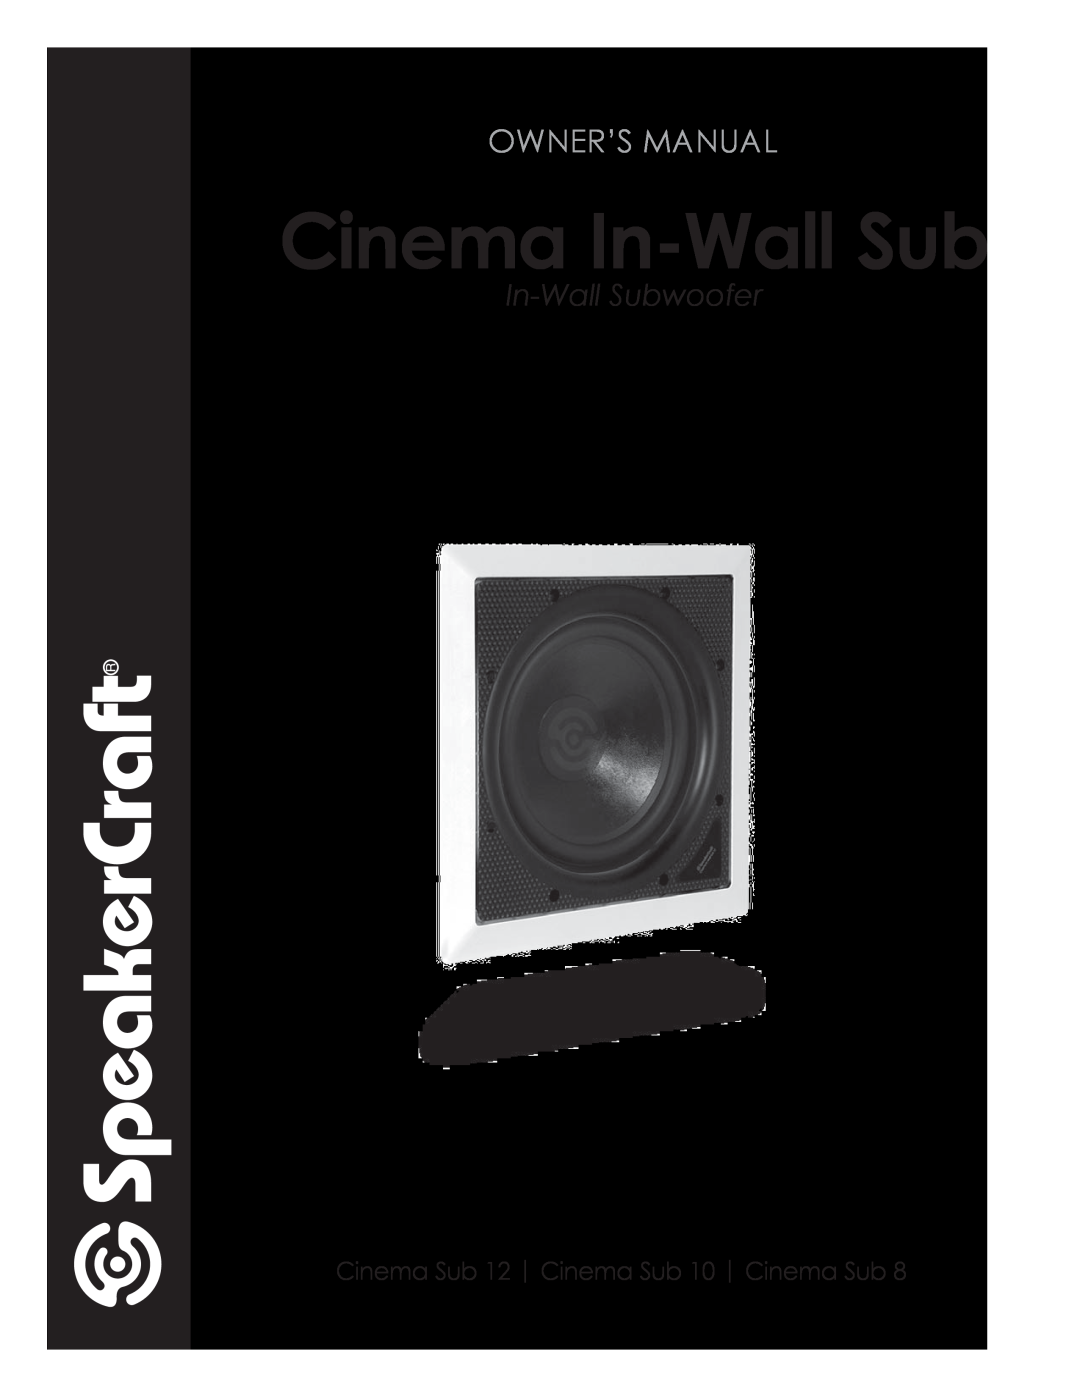 SpeakerCraft CINEMA SUB 8 owner manual Cinema In-WallSub, In-WallSubwoofer, Cinema Sub 12 Cinema Sub 10 Cinema Sub 